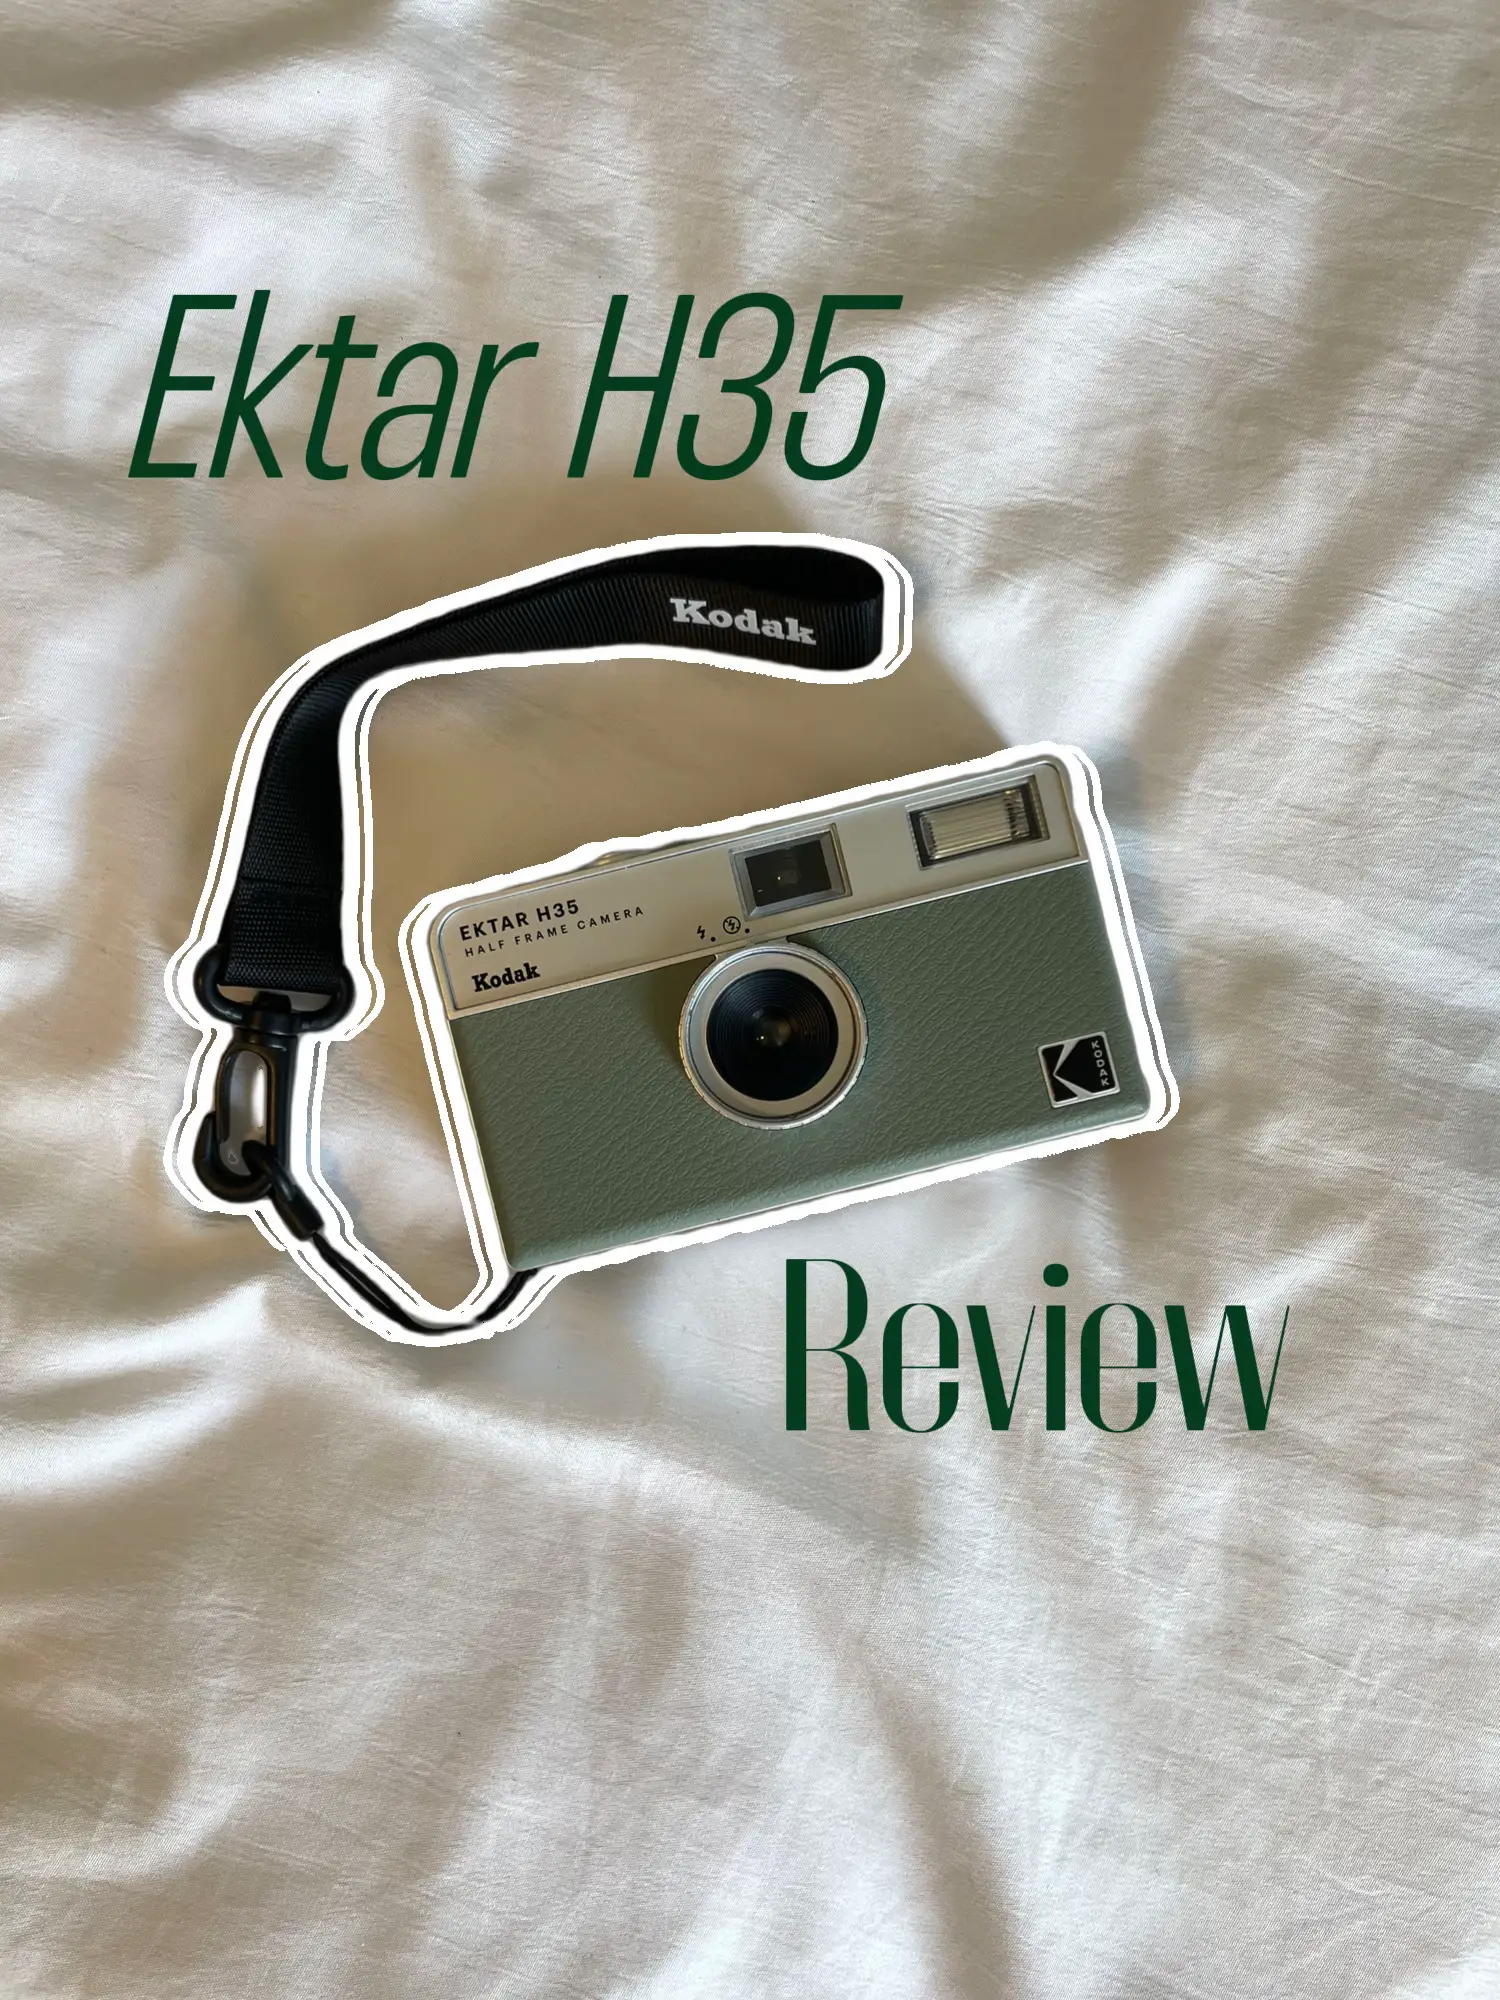 The Kodak Ektar H35 Makes Traveling Even Better